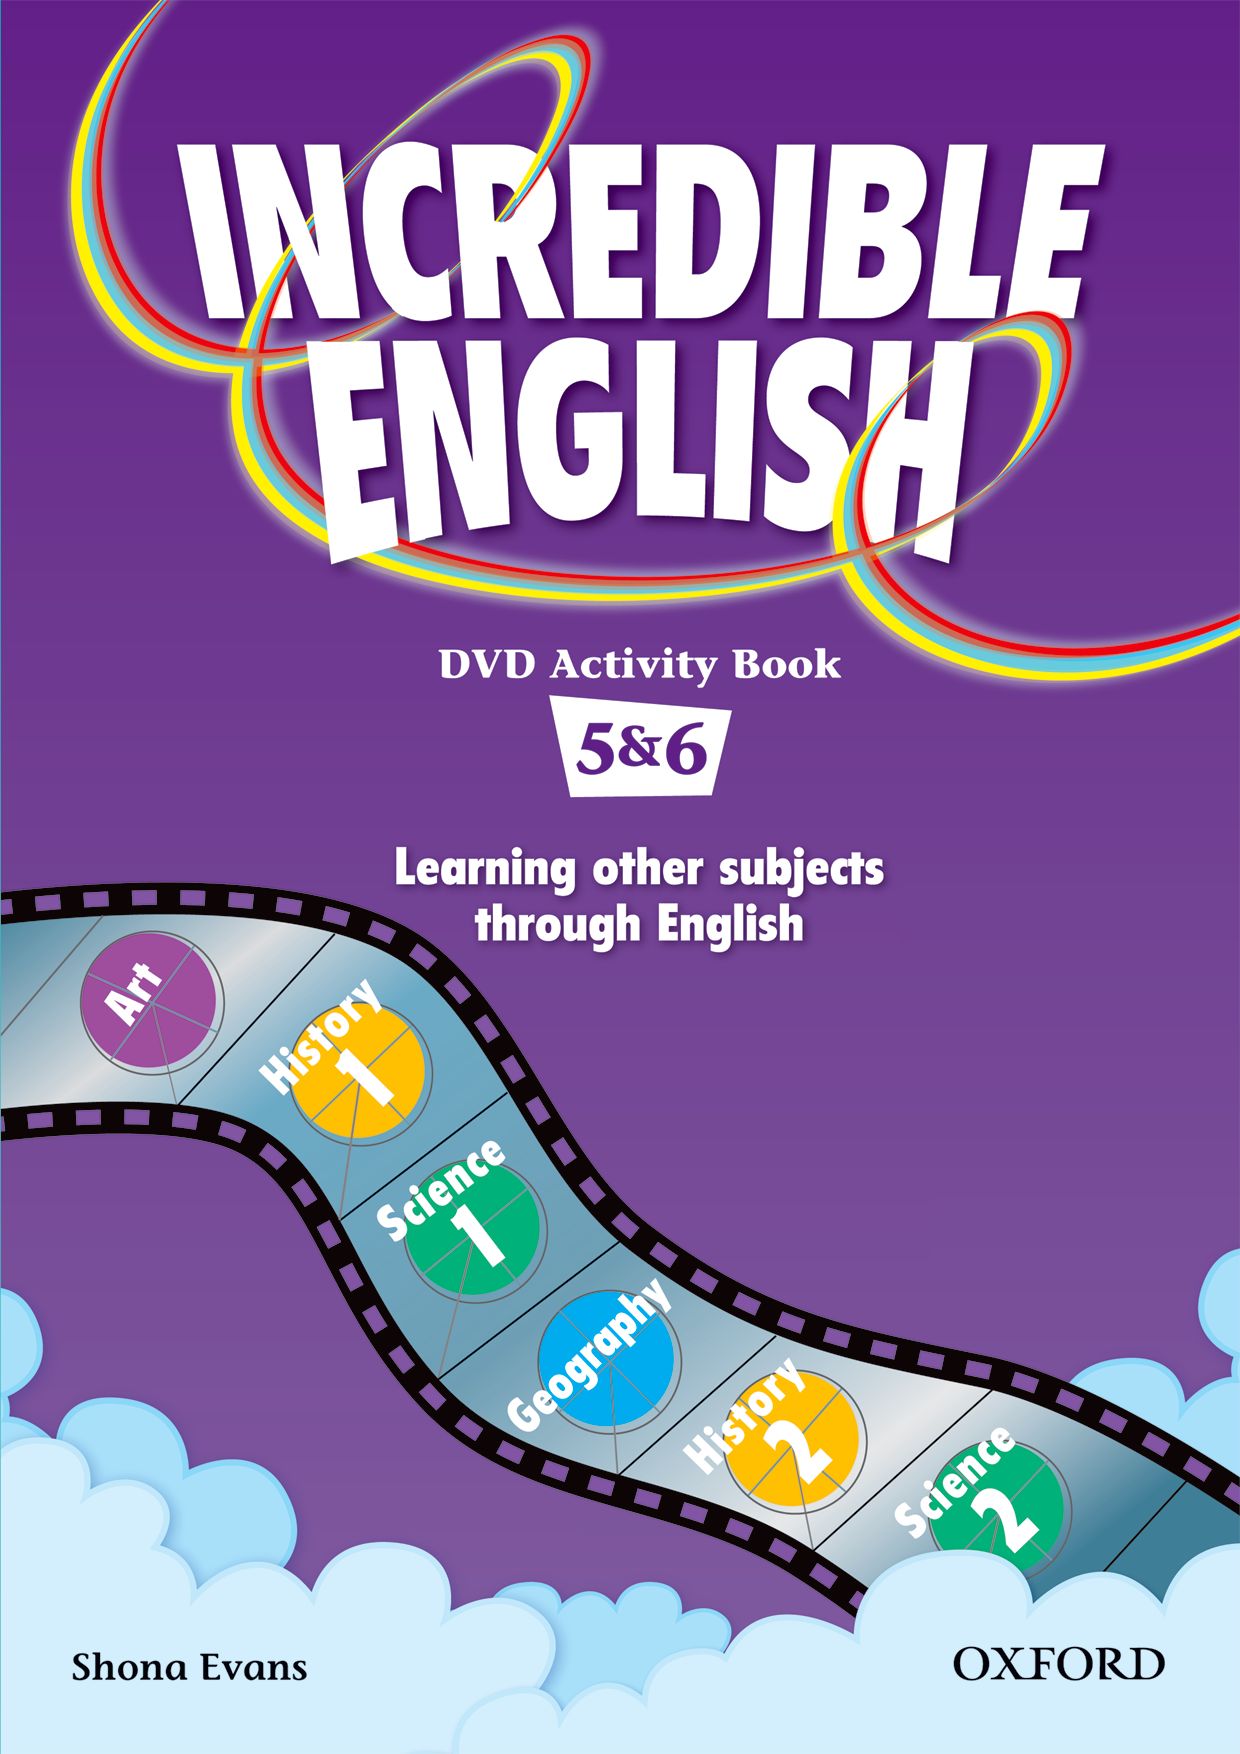 INCREDIBLE ENGLISHLISH 5&6 DVD AB